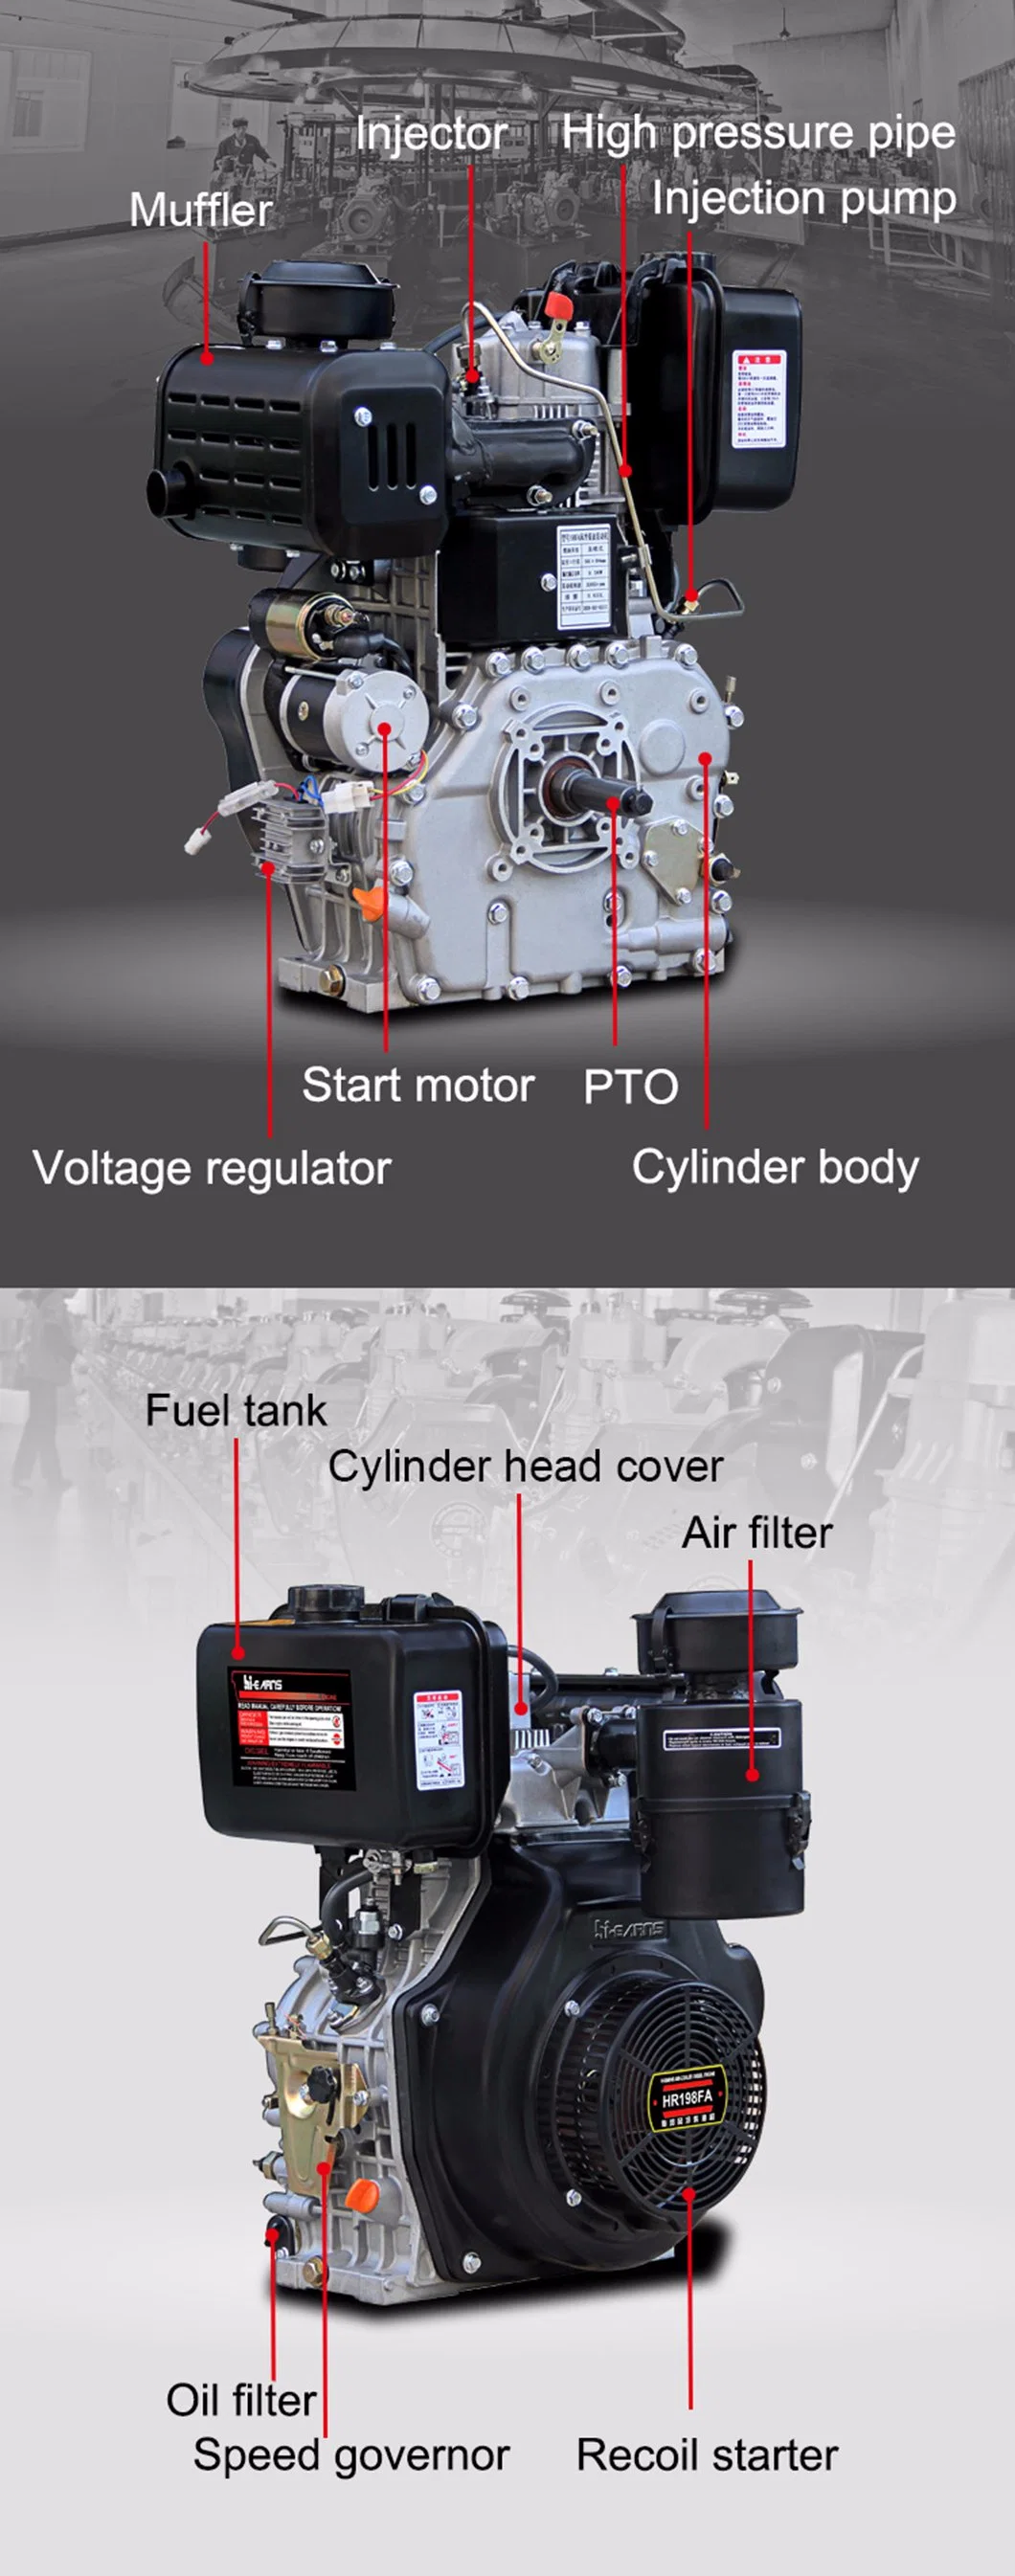 Air-Cooled Speed Hi-Earns / OEM Carton Pump Aircooled Diesel Engine